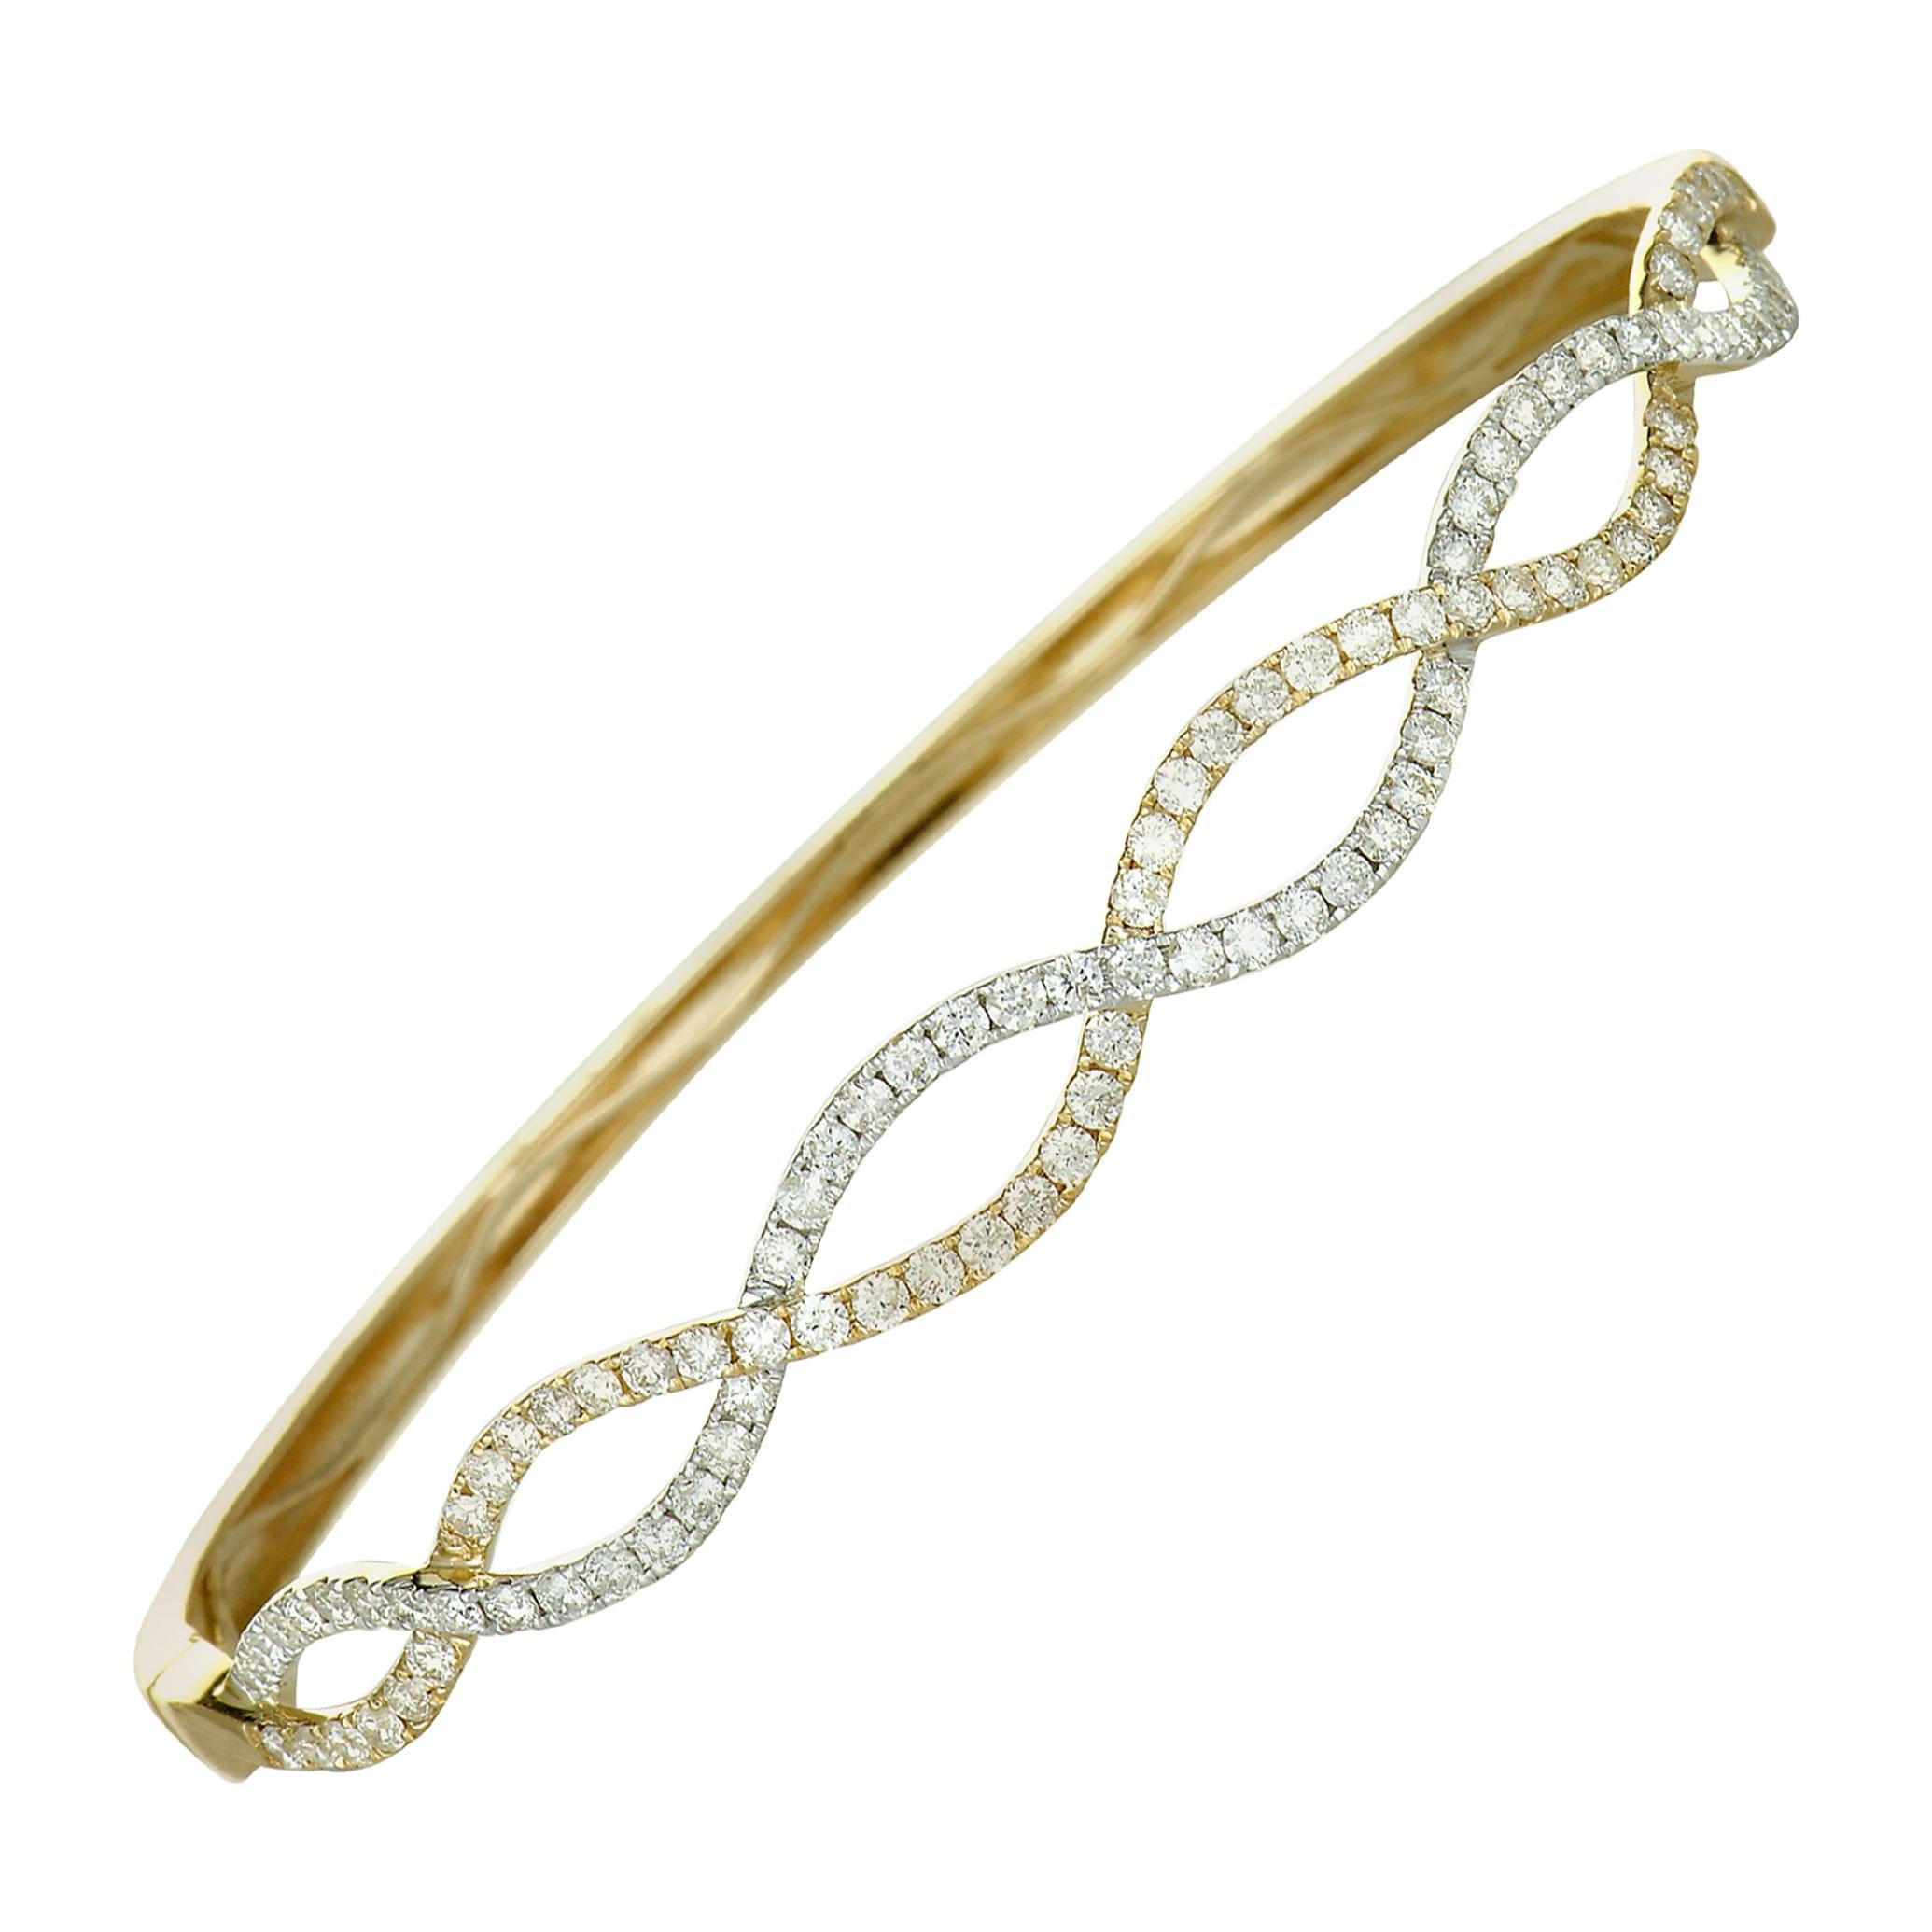 LB Exclusive 14K Yellow Gold Diamond Bangle Bracelet